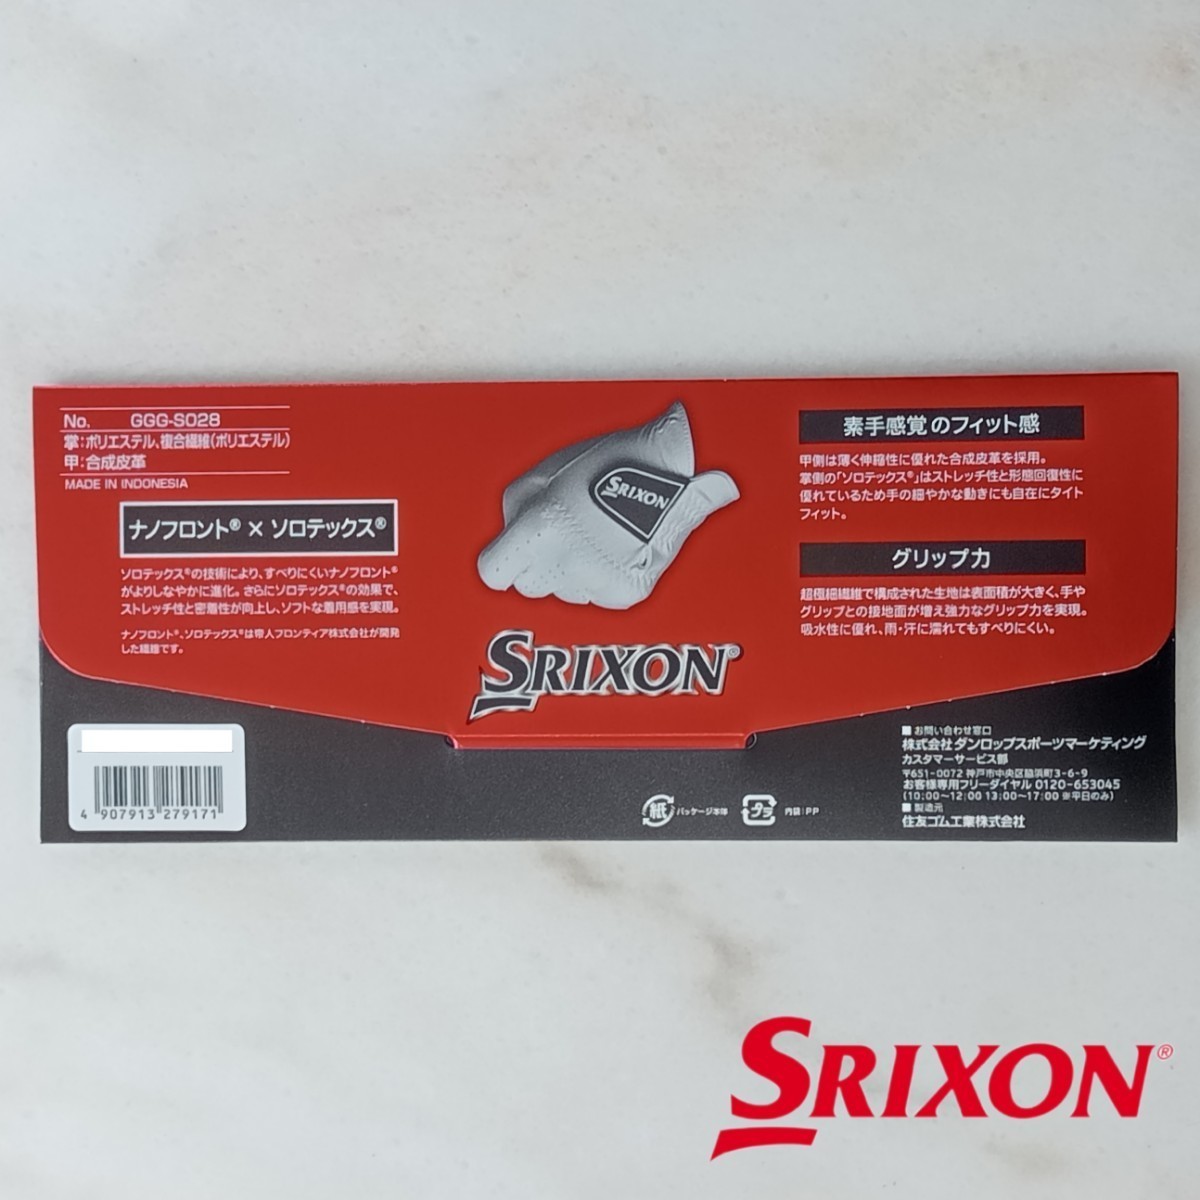 スリクソン 24cm 白 2枚セット GGG-S028 ダンロップ ゴルフグローブ 新品未使用品 ゴルフ用品 SRIXON PRO SERIES 薄手 ホワイト グローブの画像6